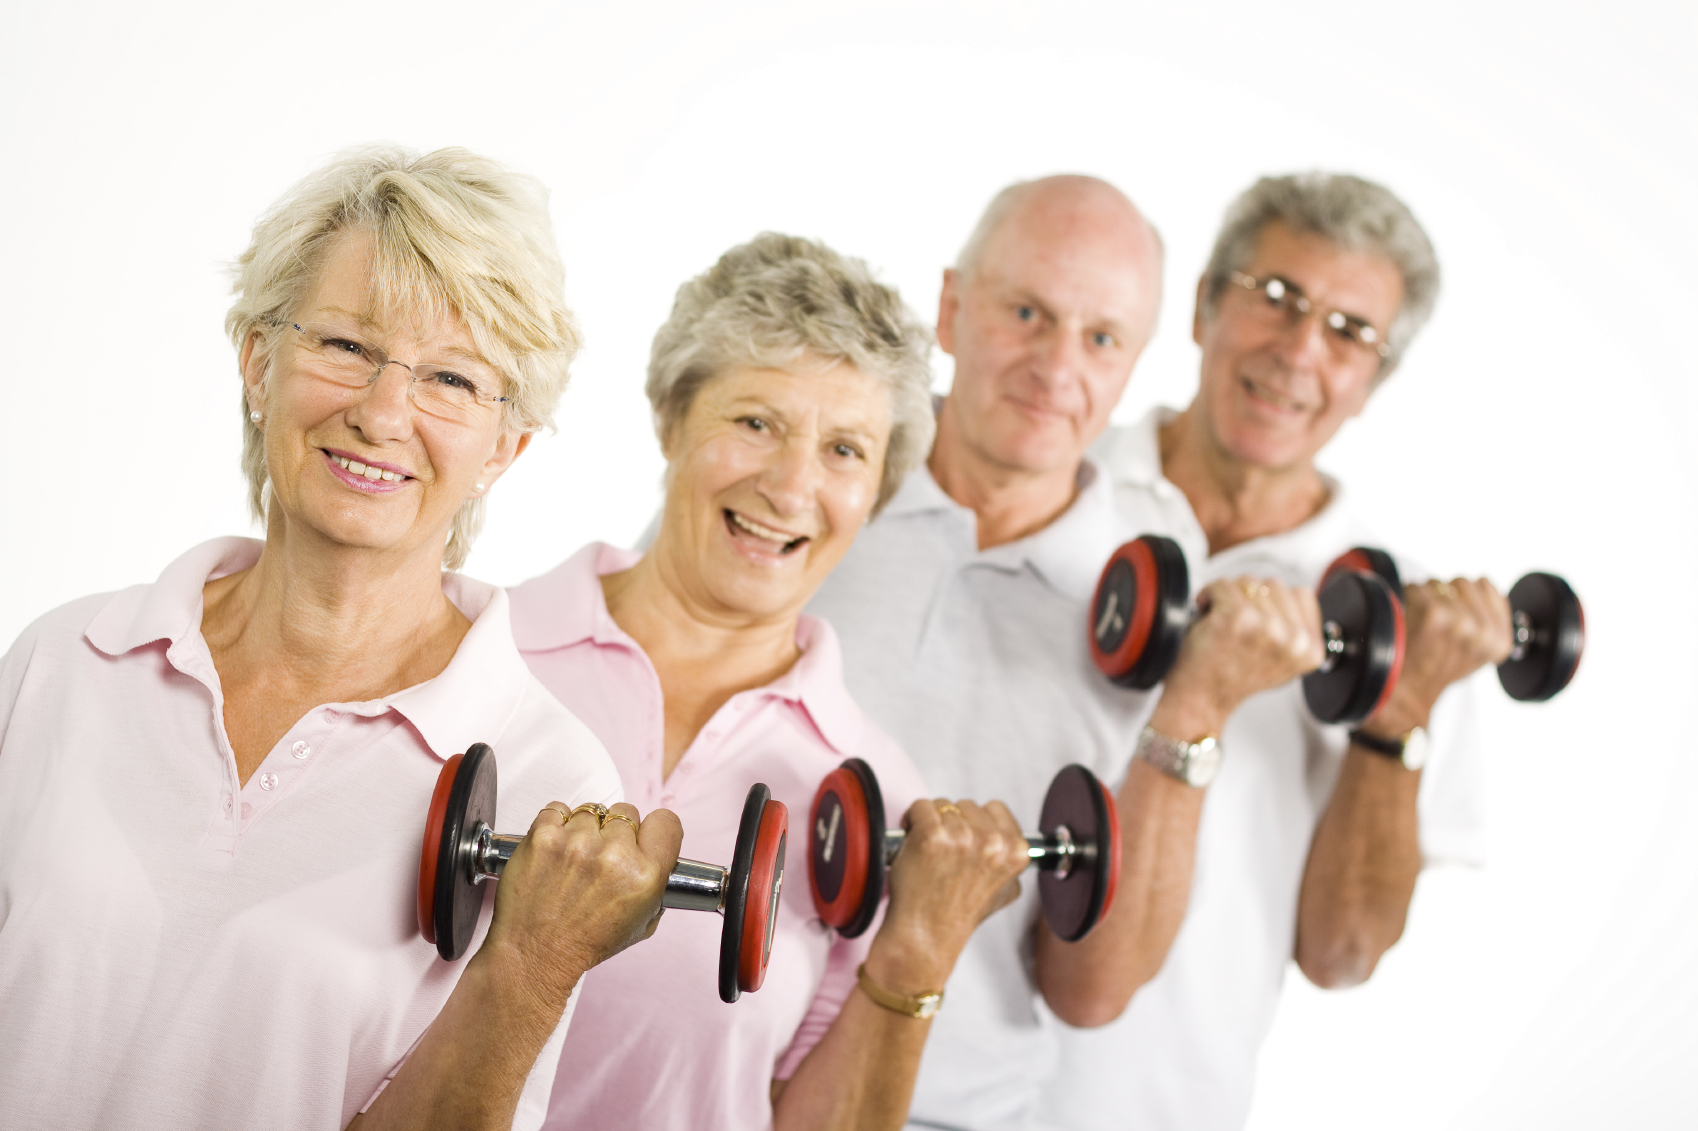 Dumbbell Strength Training Exercises for Seniors